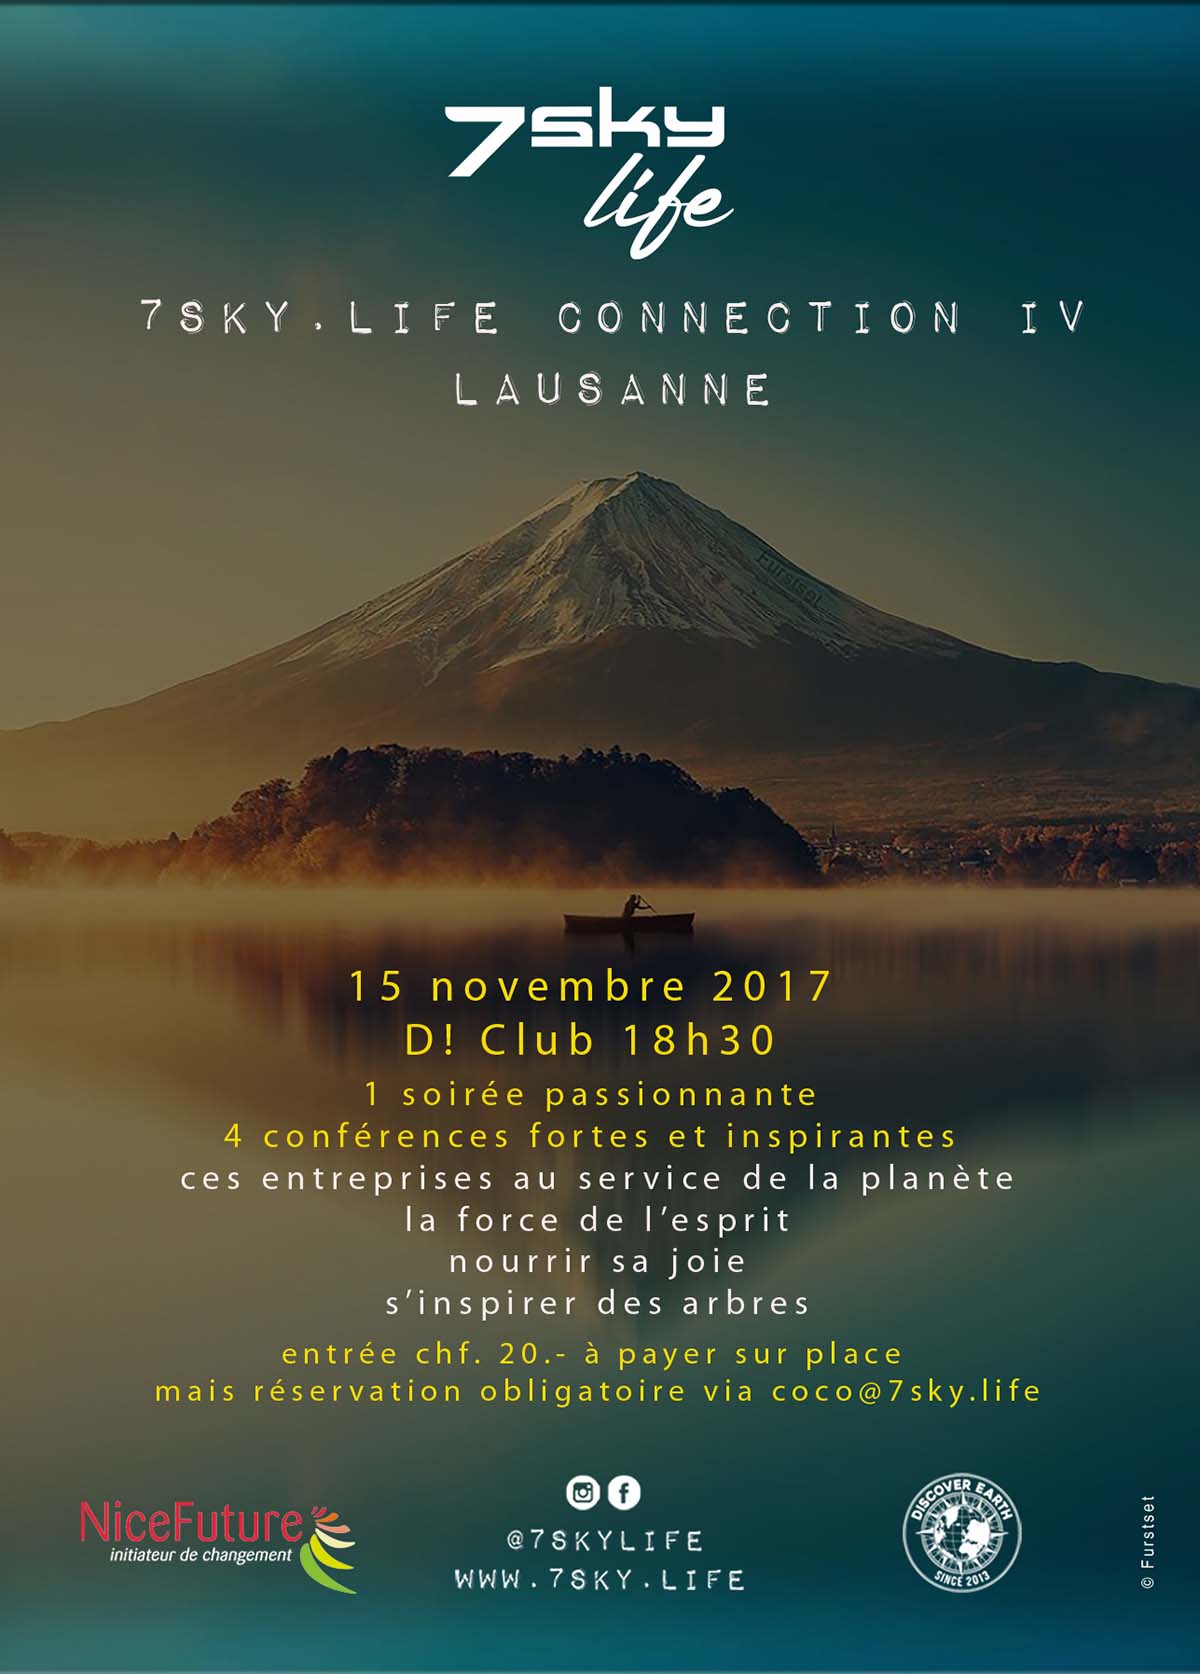 7sky.life Connection IV Lausanne | 18h30 D! Club | 15 novembre 2017